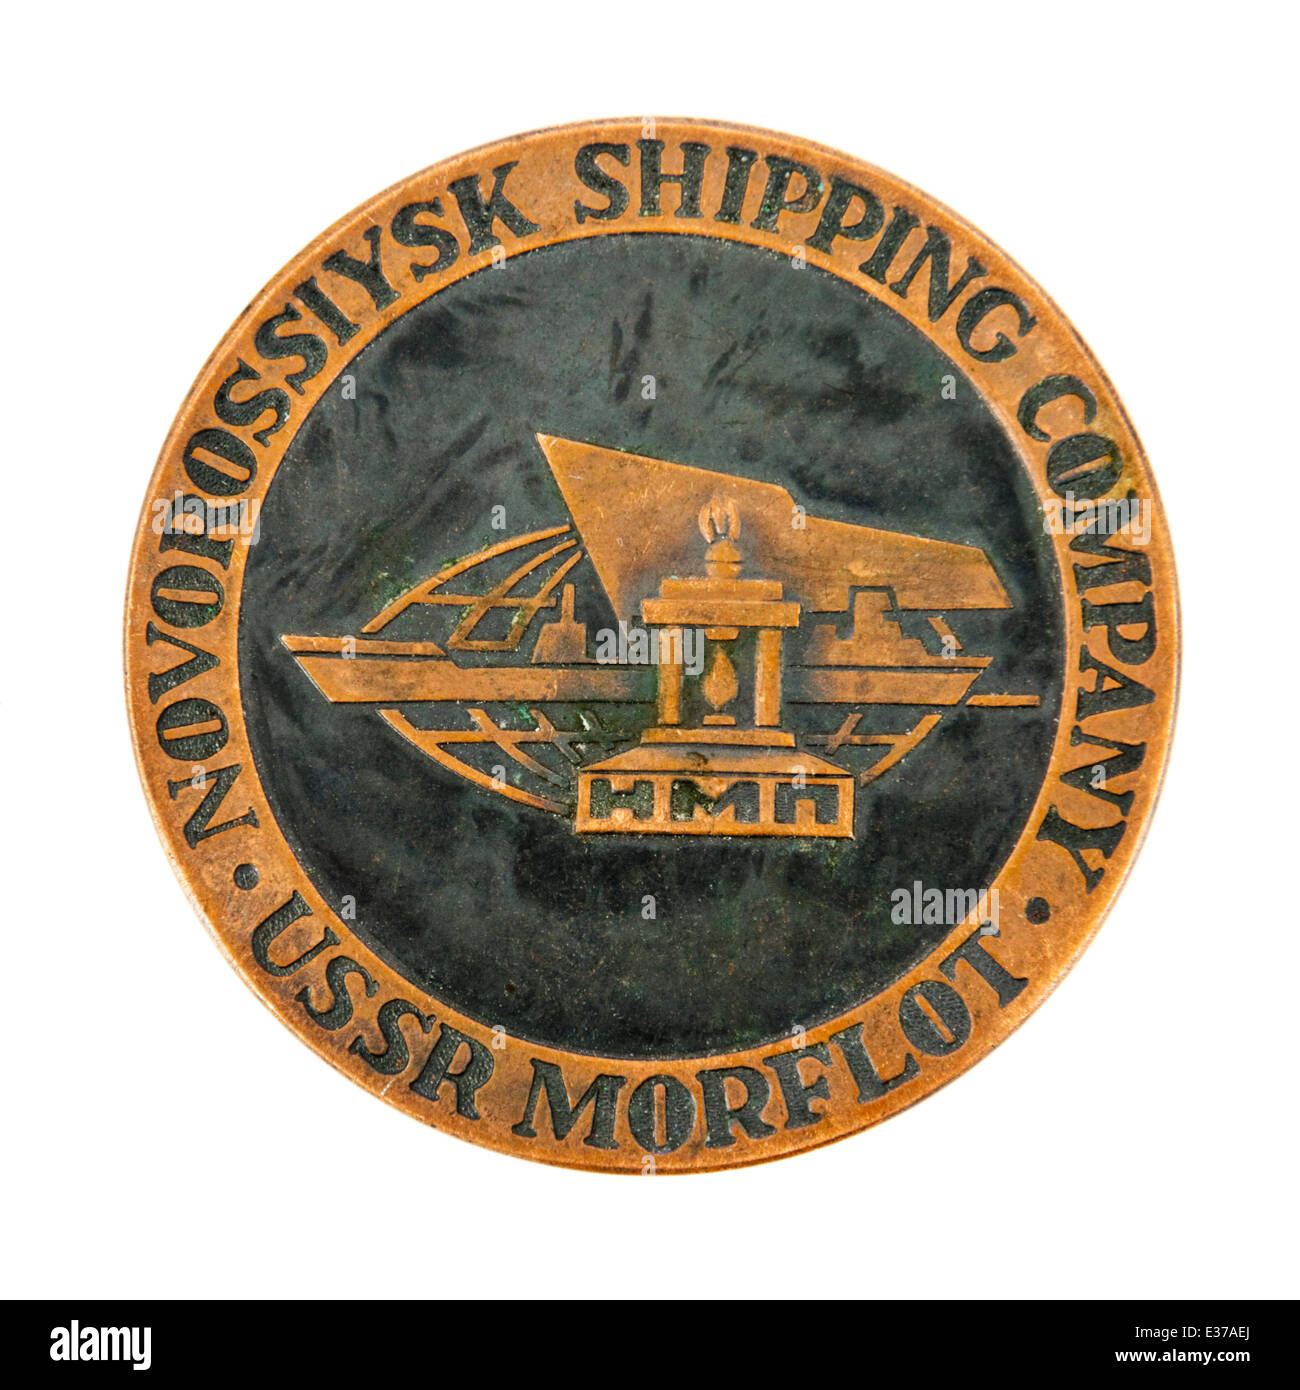 Novorossiysk Shipping Company (USSR Morflot) medallion. Stock Photo